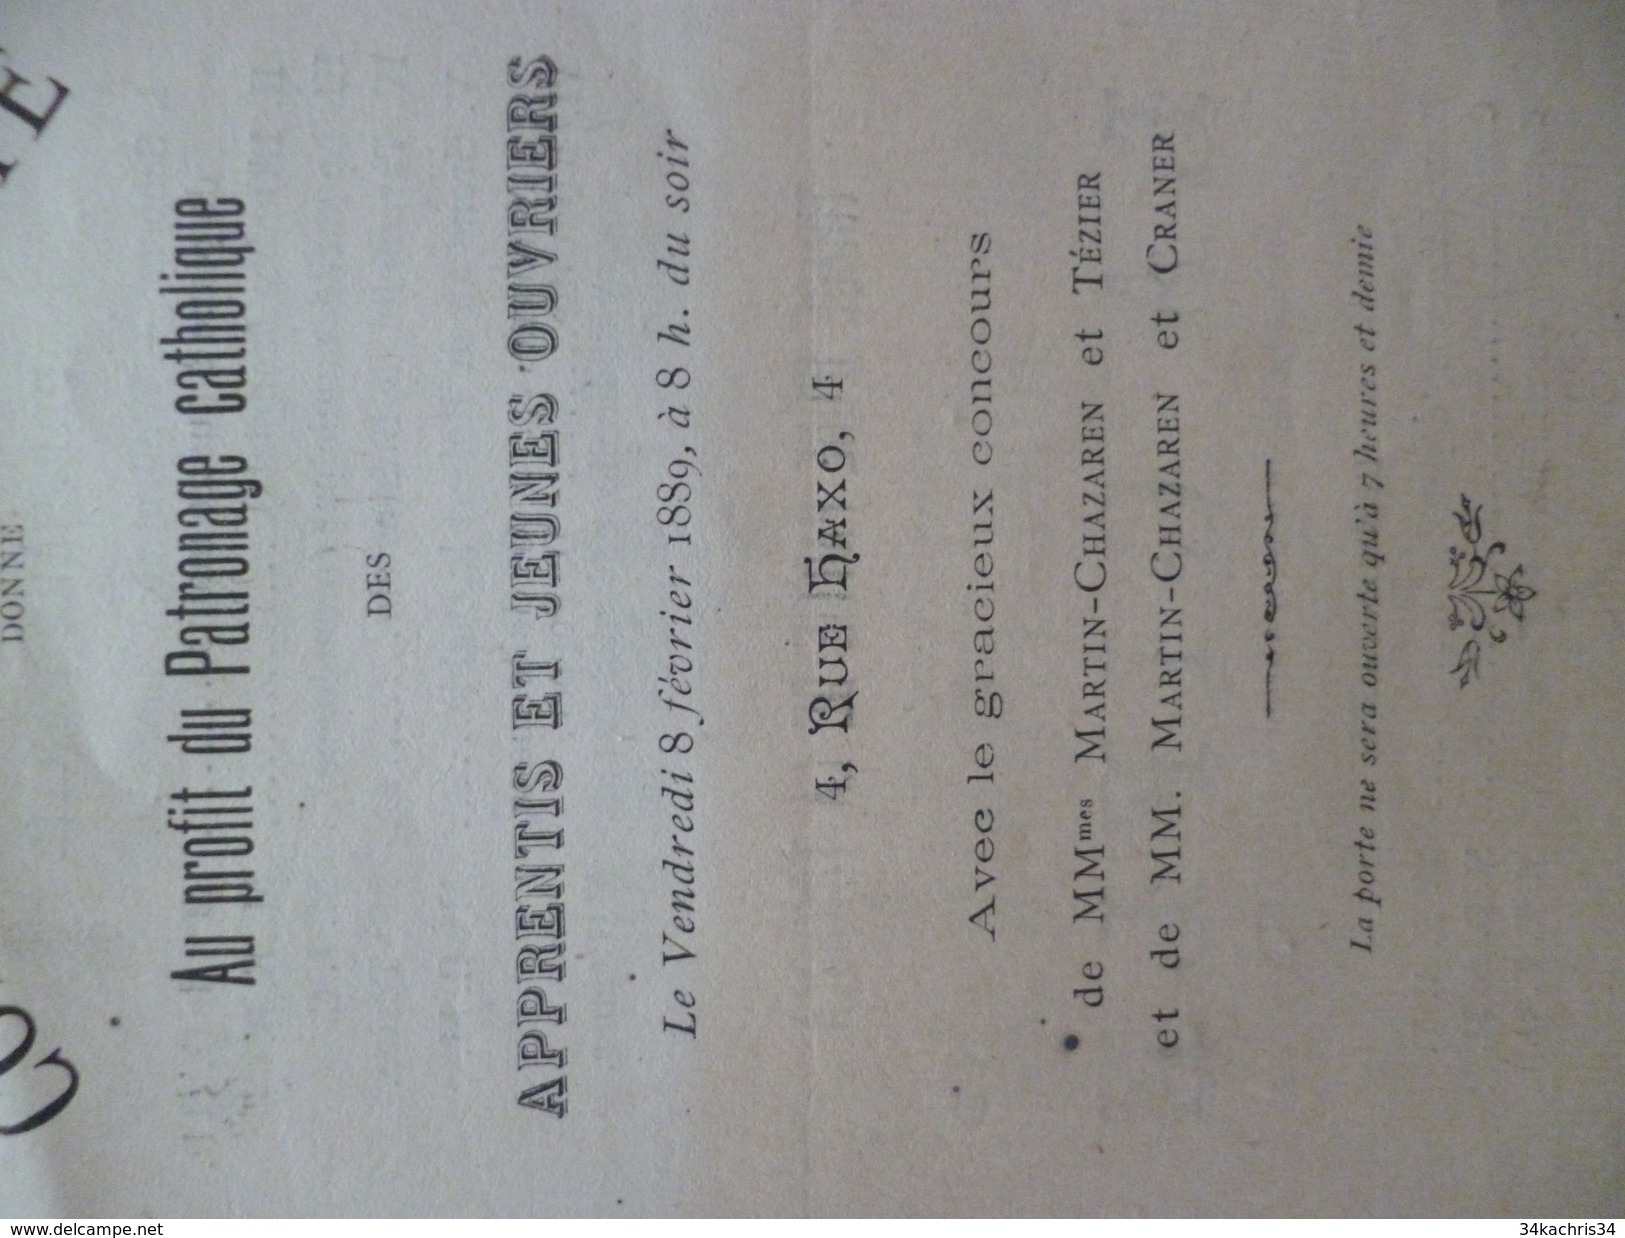 Programme Illustré D'un Dessin Concert De Charité Patronage Catholique 8/02/1889 Grenoble Rue Haxo - Programme